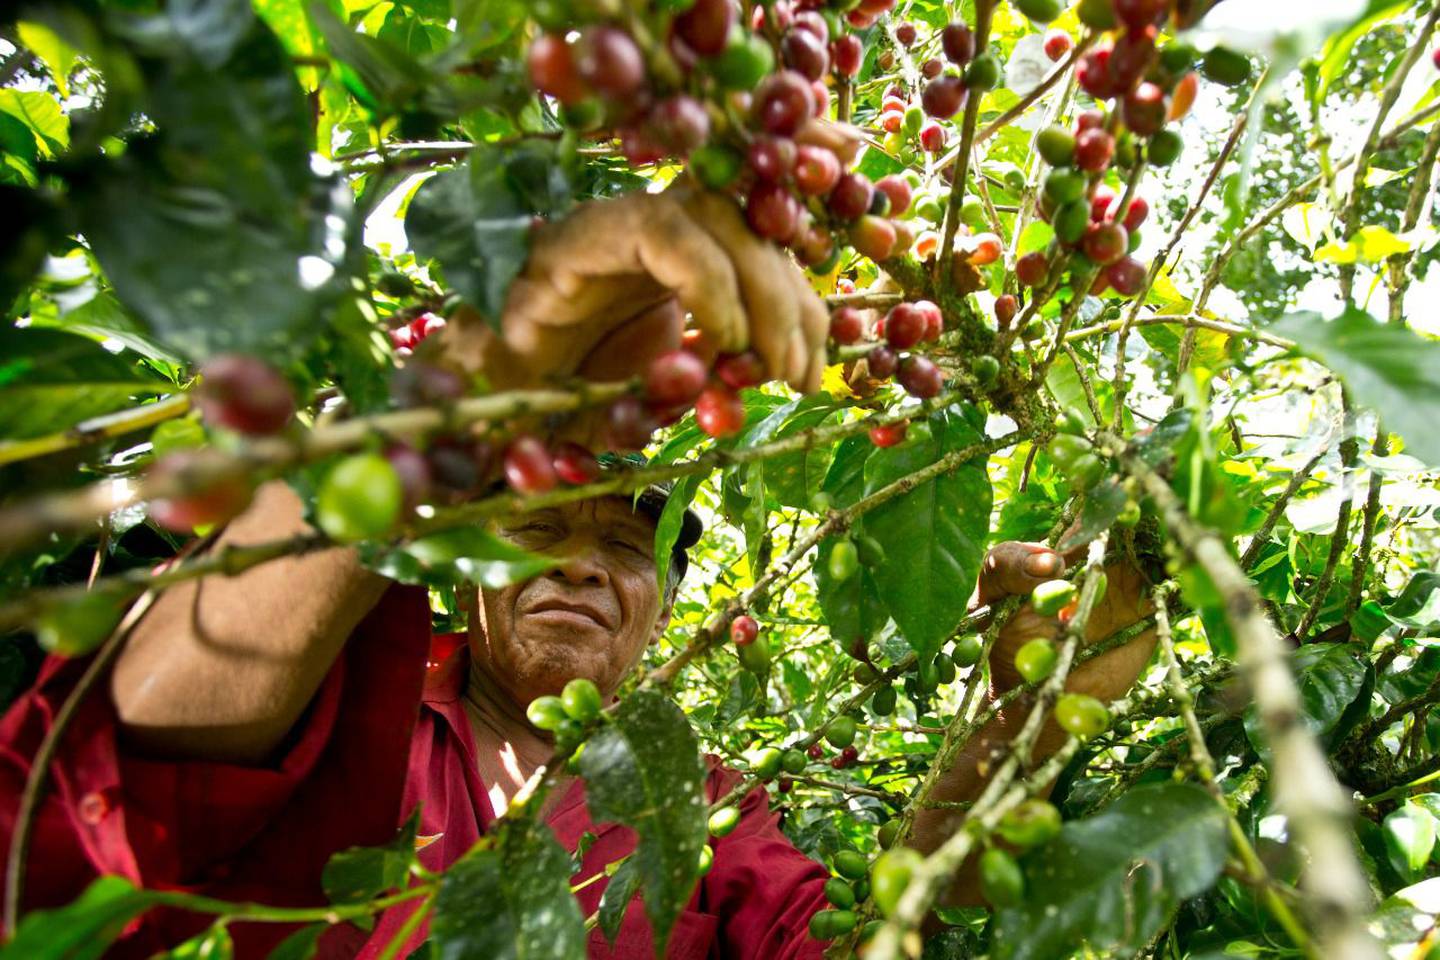 Ya inició la cosecha de café 2022 en Turrialba y Cafetalera Aquiares ocupa contratar unos 100 recolectores de café